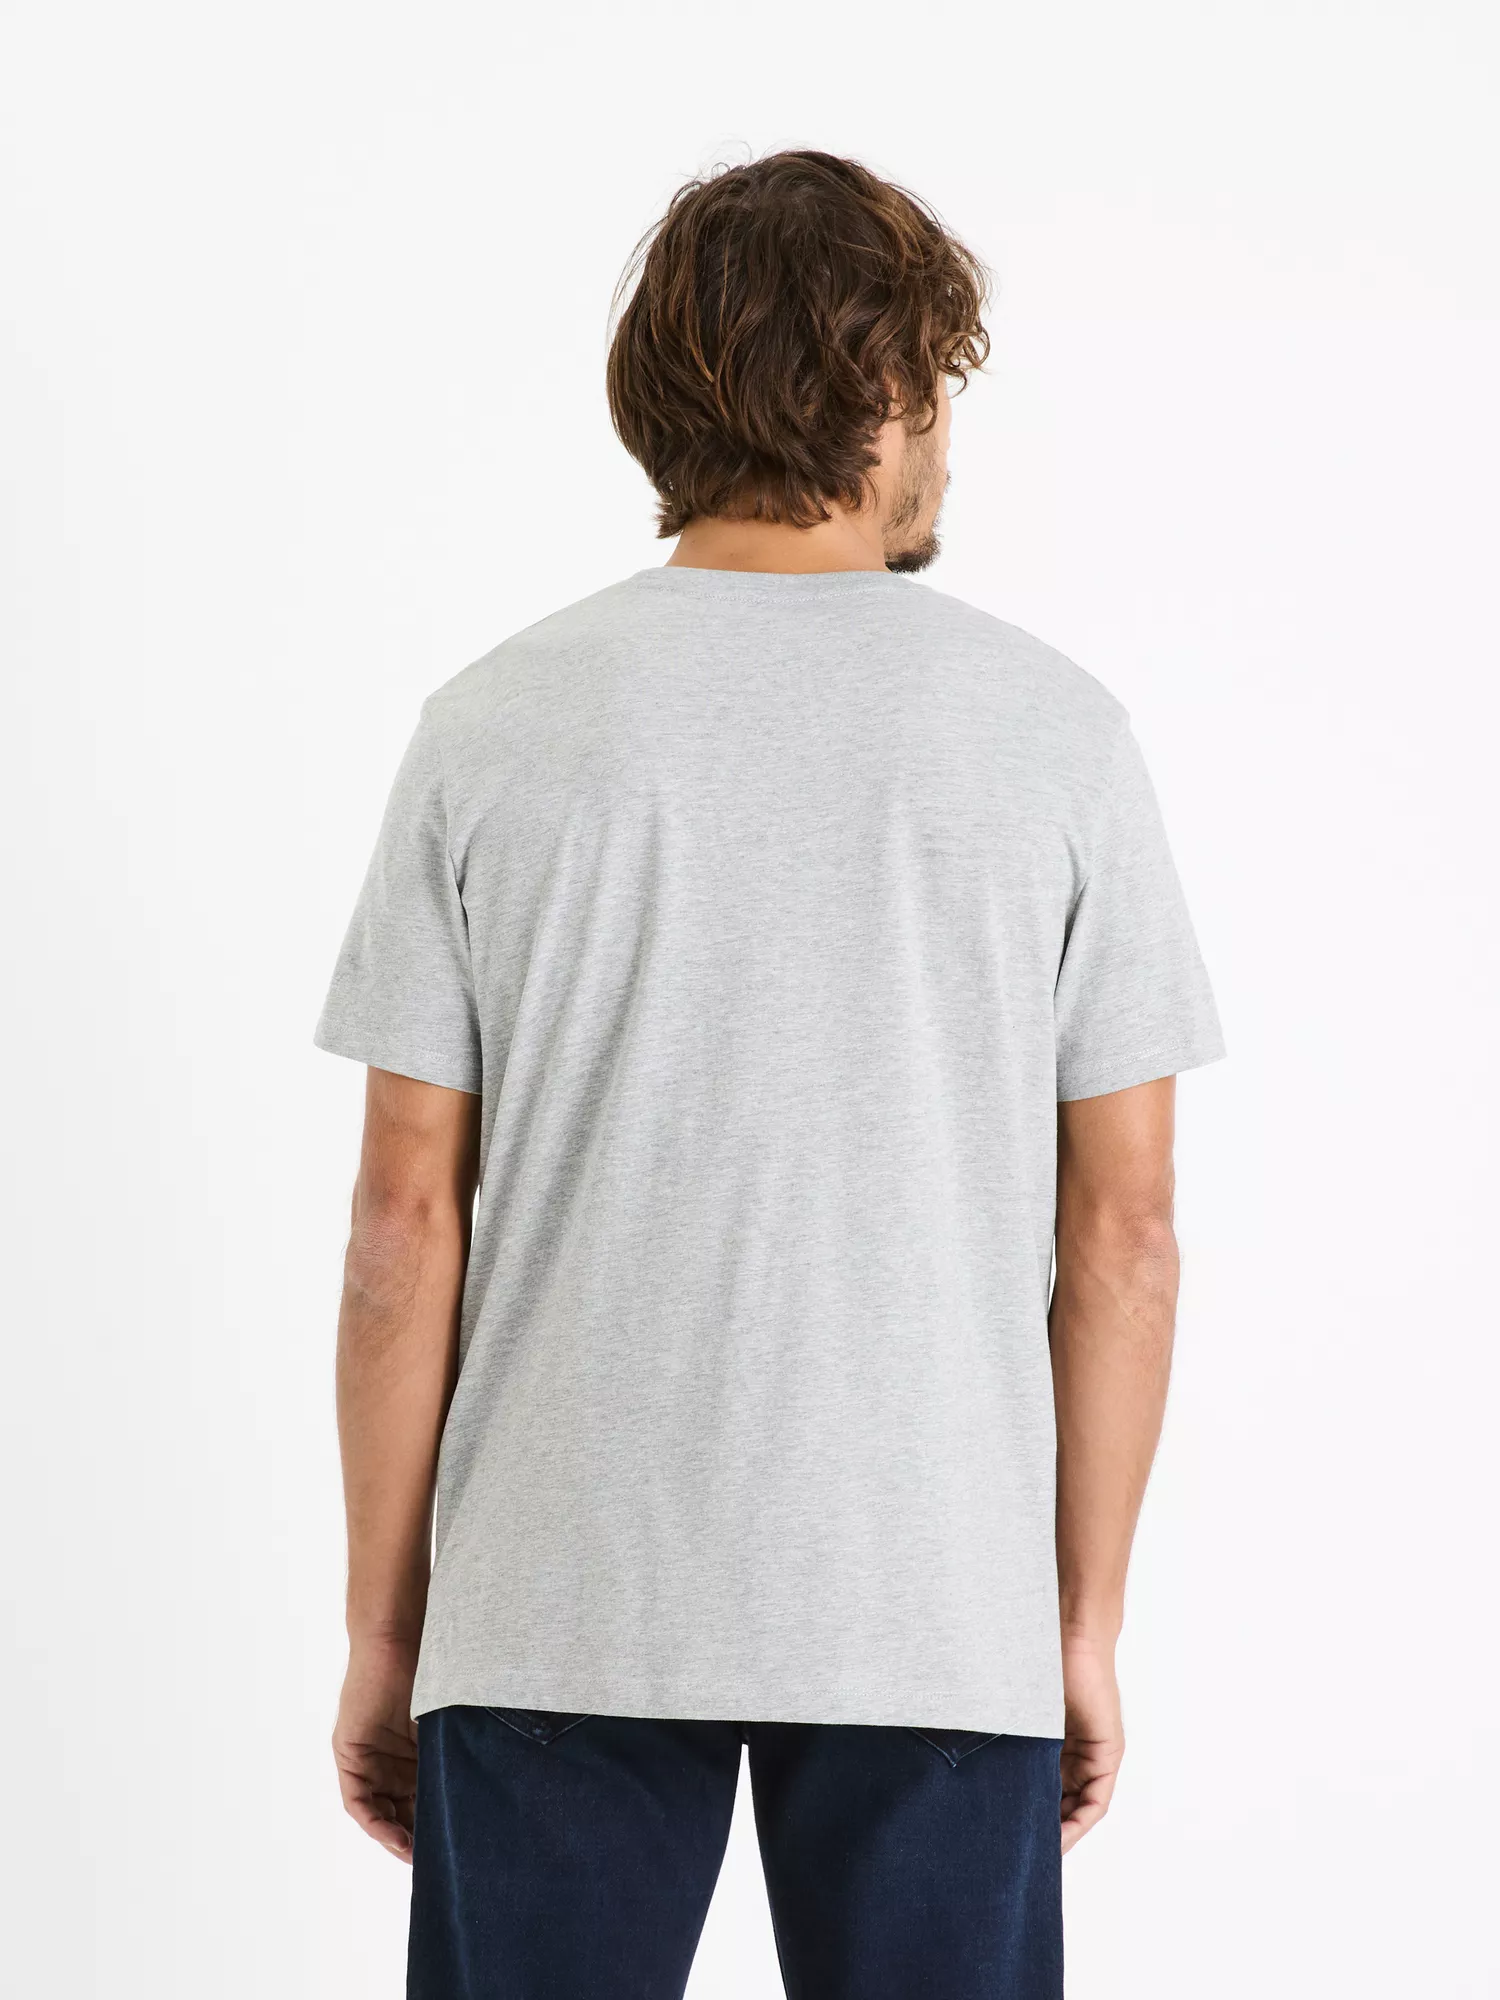 Hladké bavlnené tričko Tebase (2)